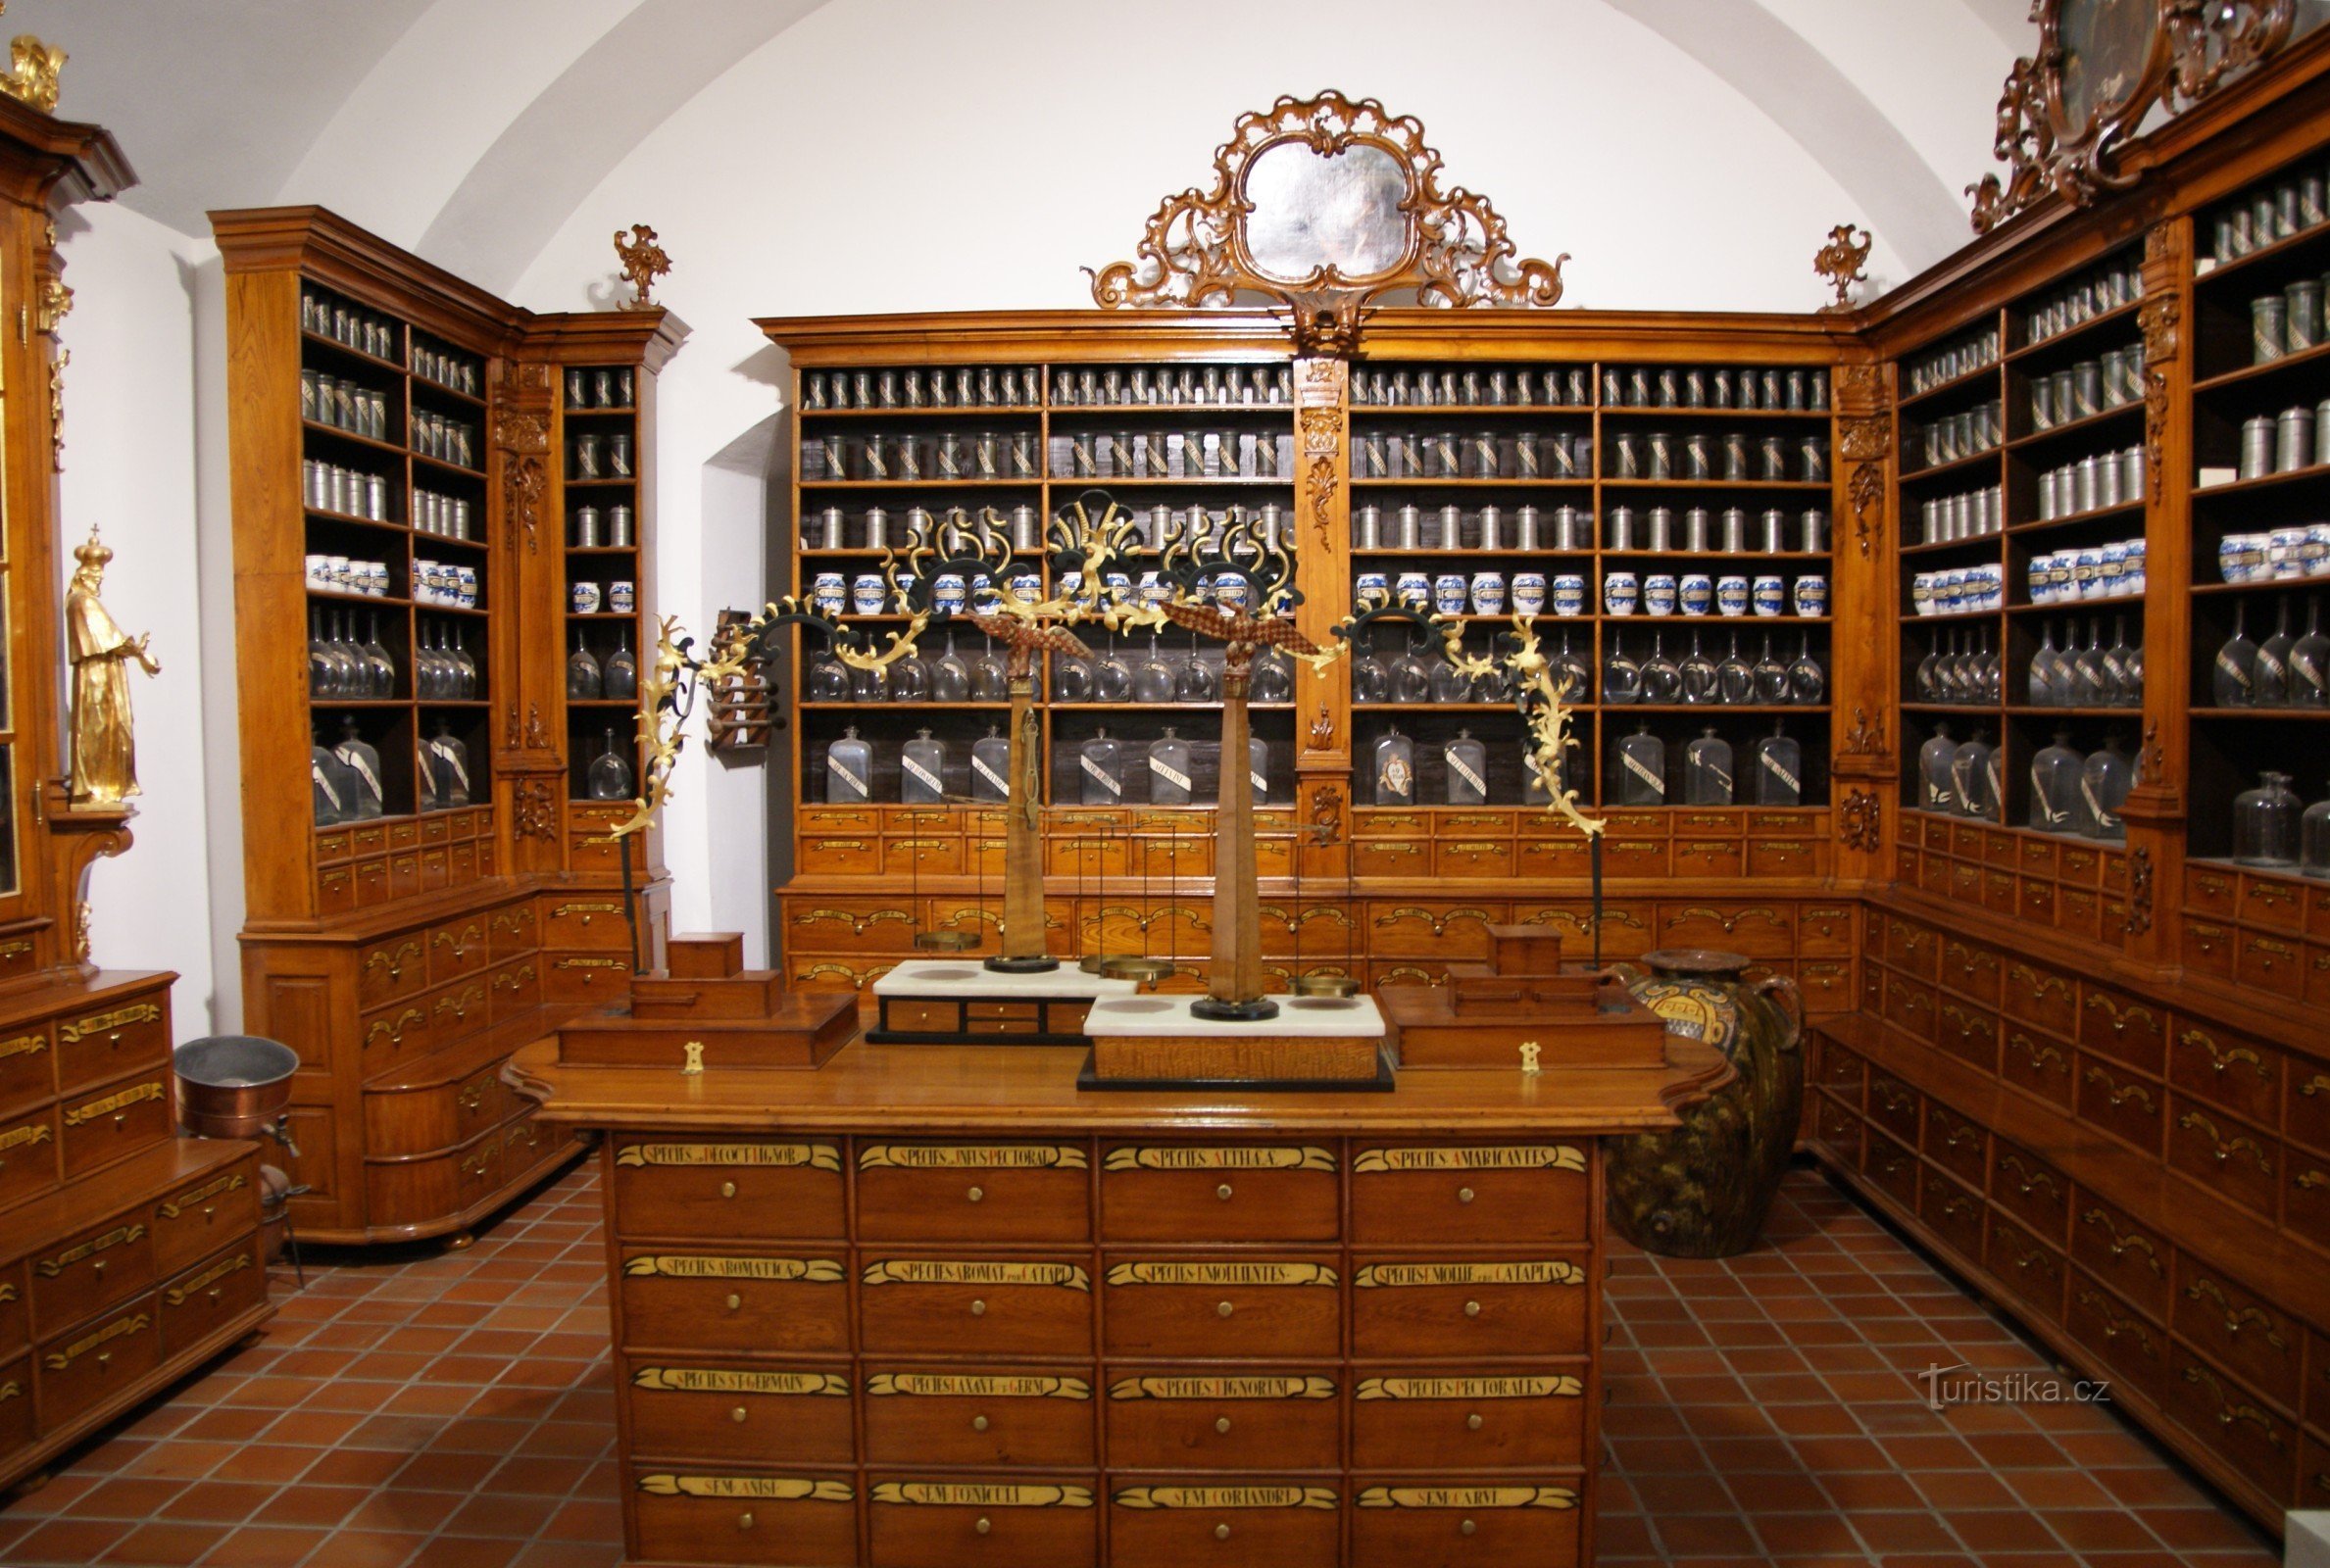 Brno (Špilberk) – farmacia barocca